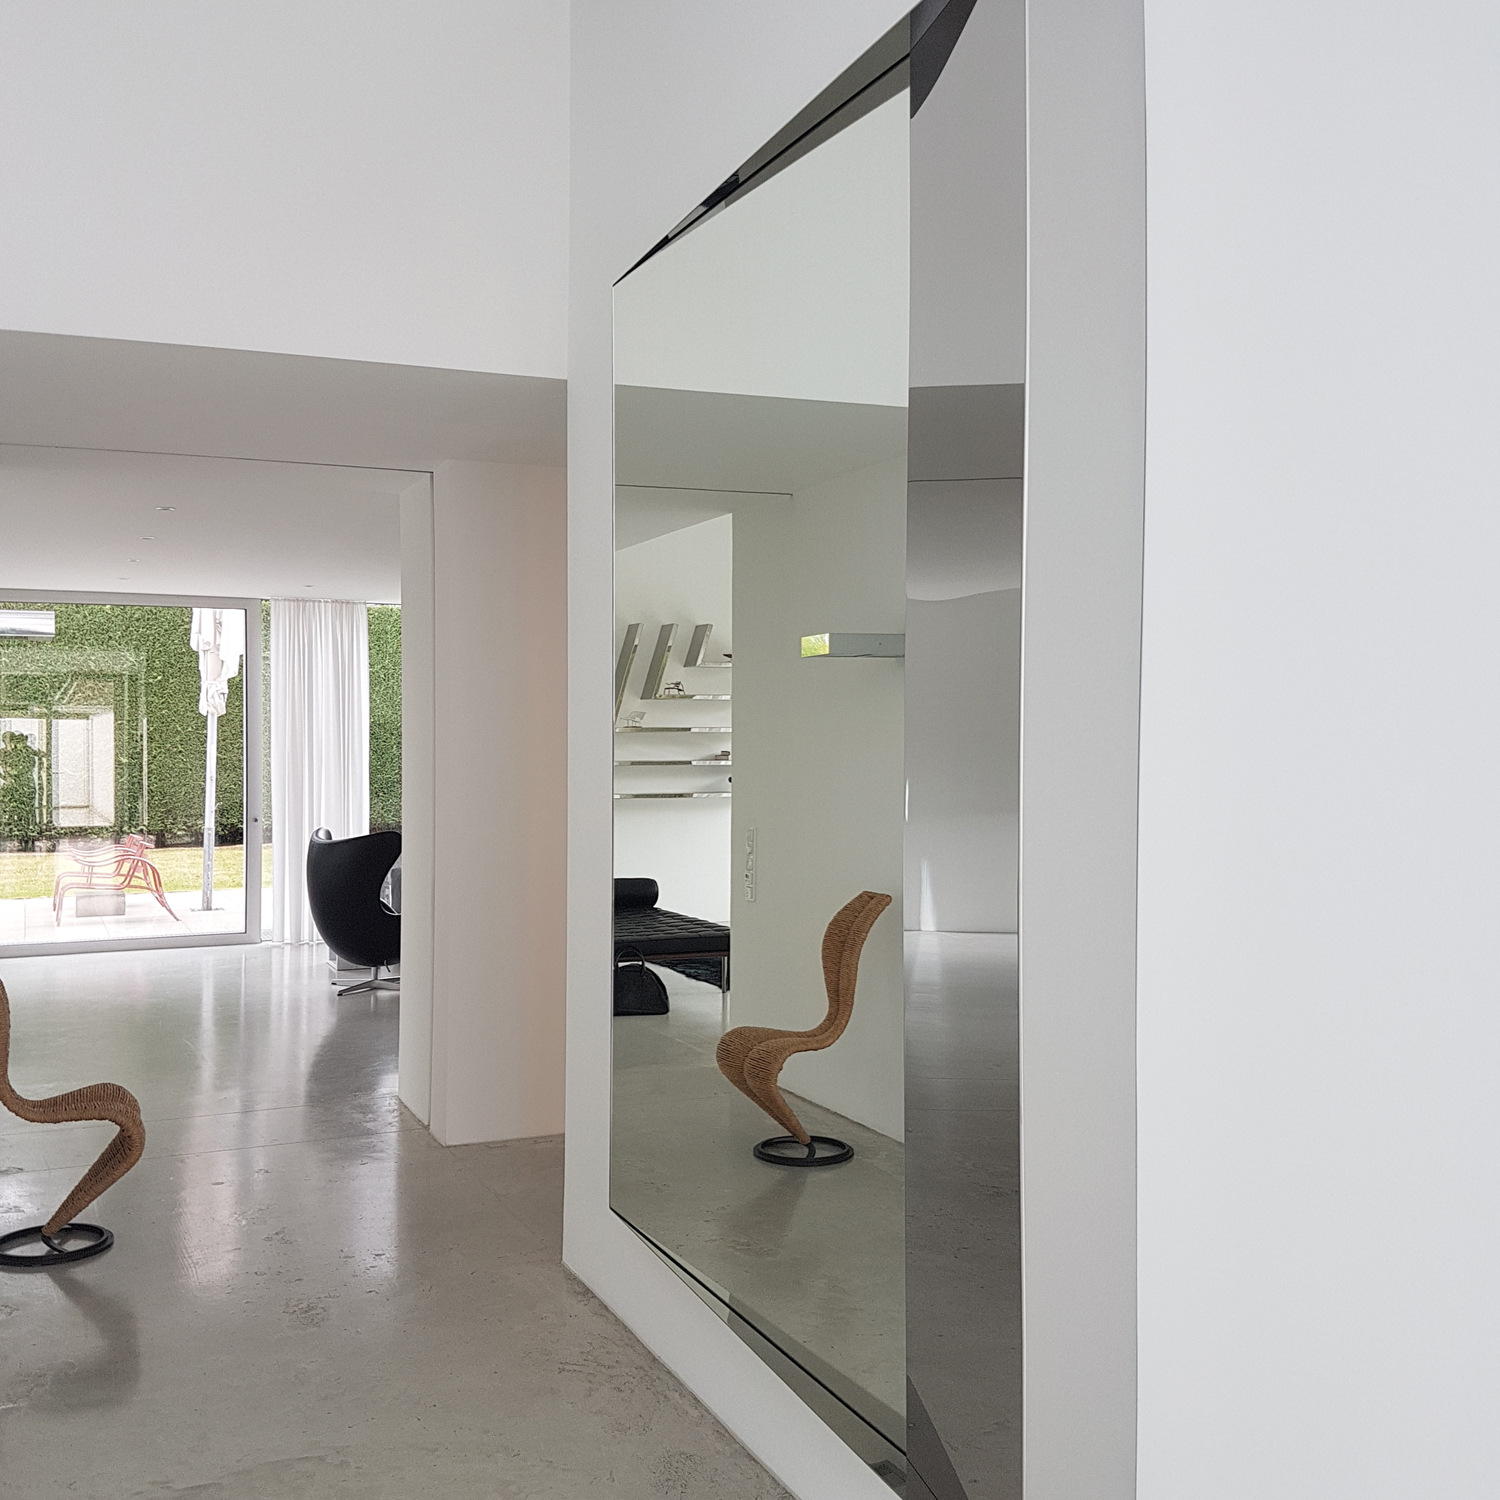 Hochglanzpolierter Edelstahlspiegel (2,5 x 2 m) | Design: carine stelte architecture & design